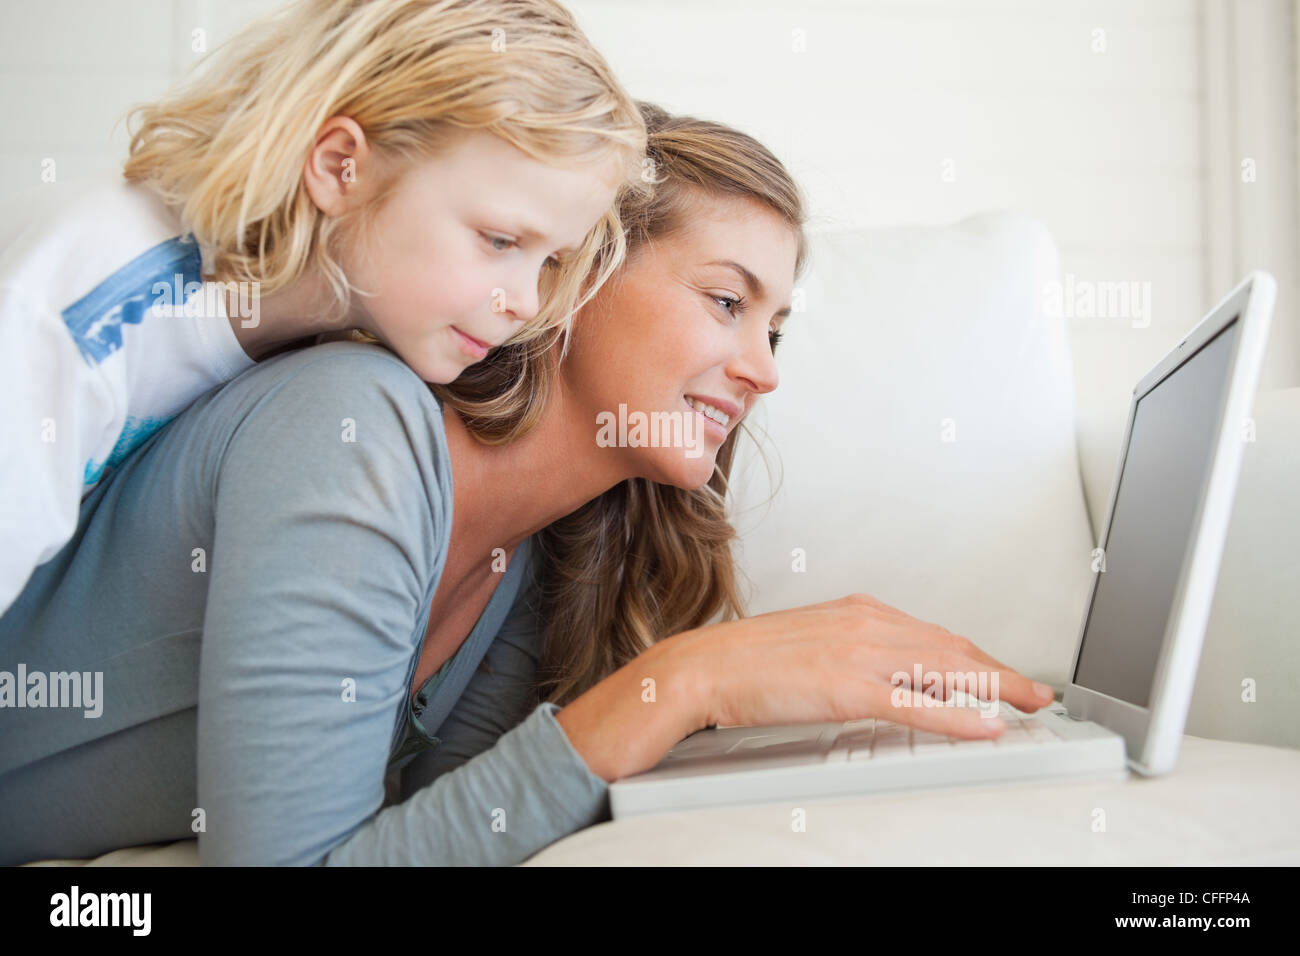 Una donna giace sul lettino con il suo computer portatile come sua figlia si trova sulla parte superiore della sua Foto Stock